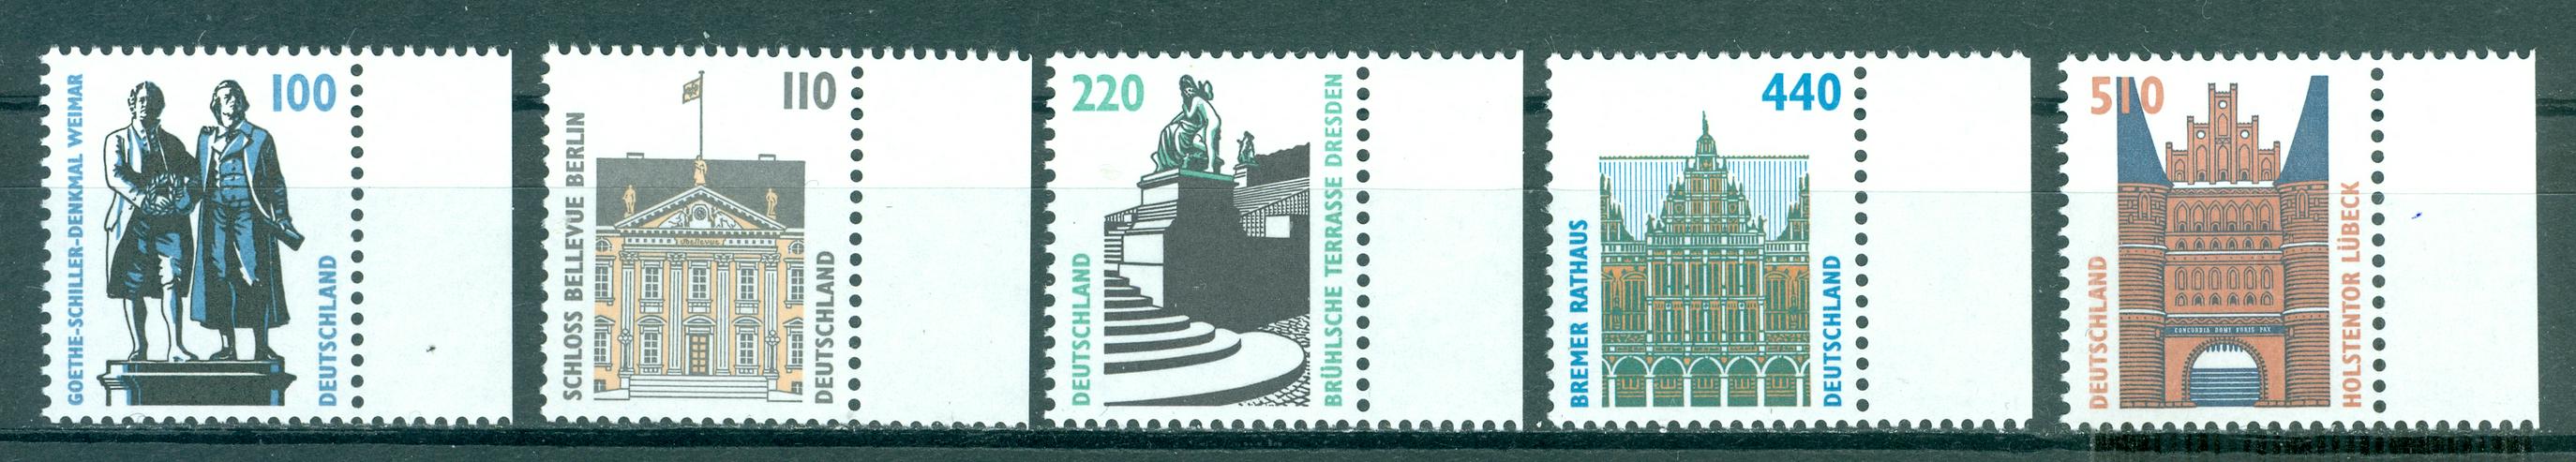 Bund postfrisch Nr. 1934-1938 mit Rand, wie auf dem Bild zu sehen, ohne Falz - Deutschland - Bild 1